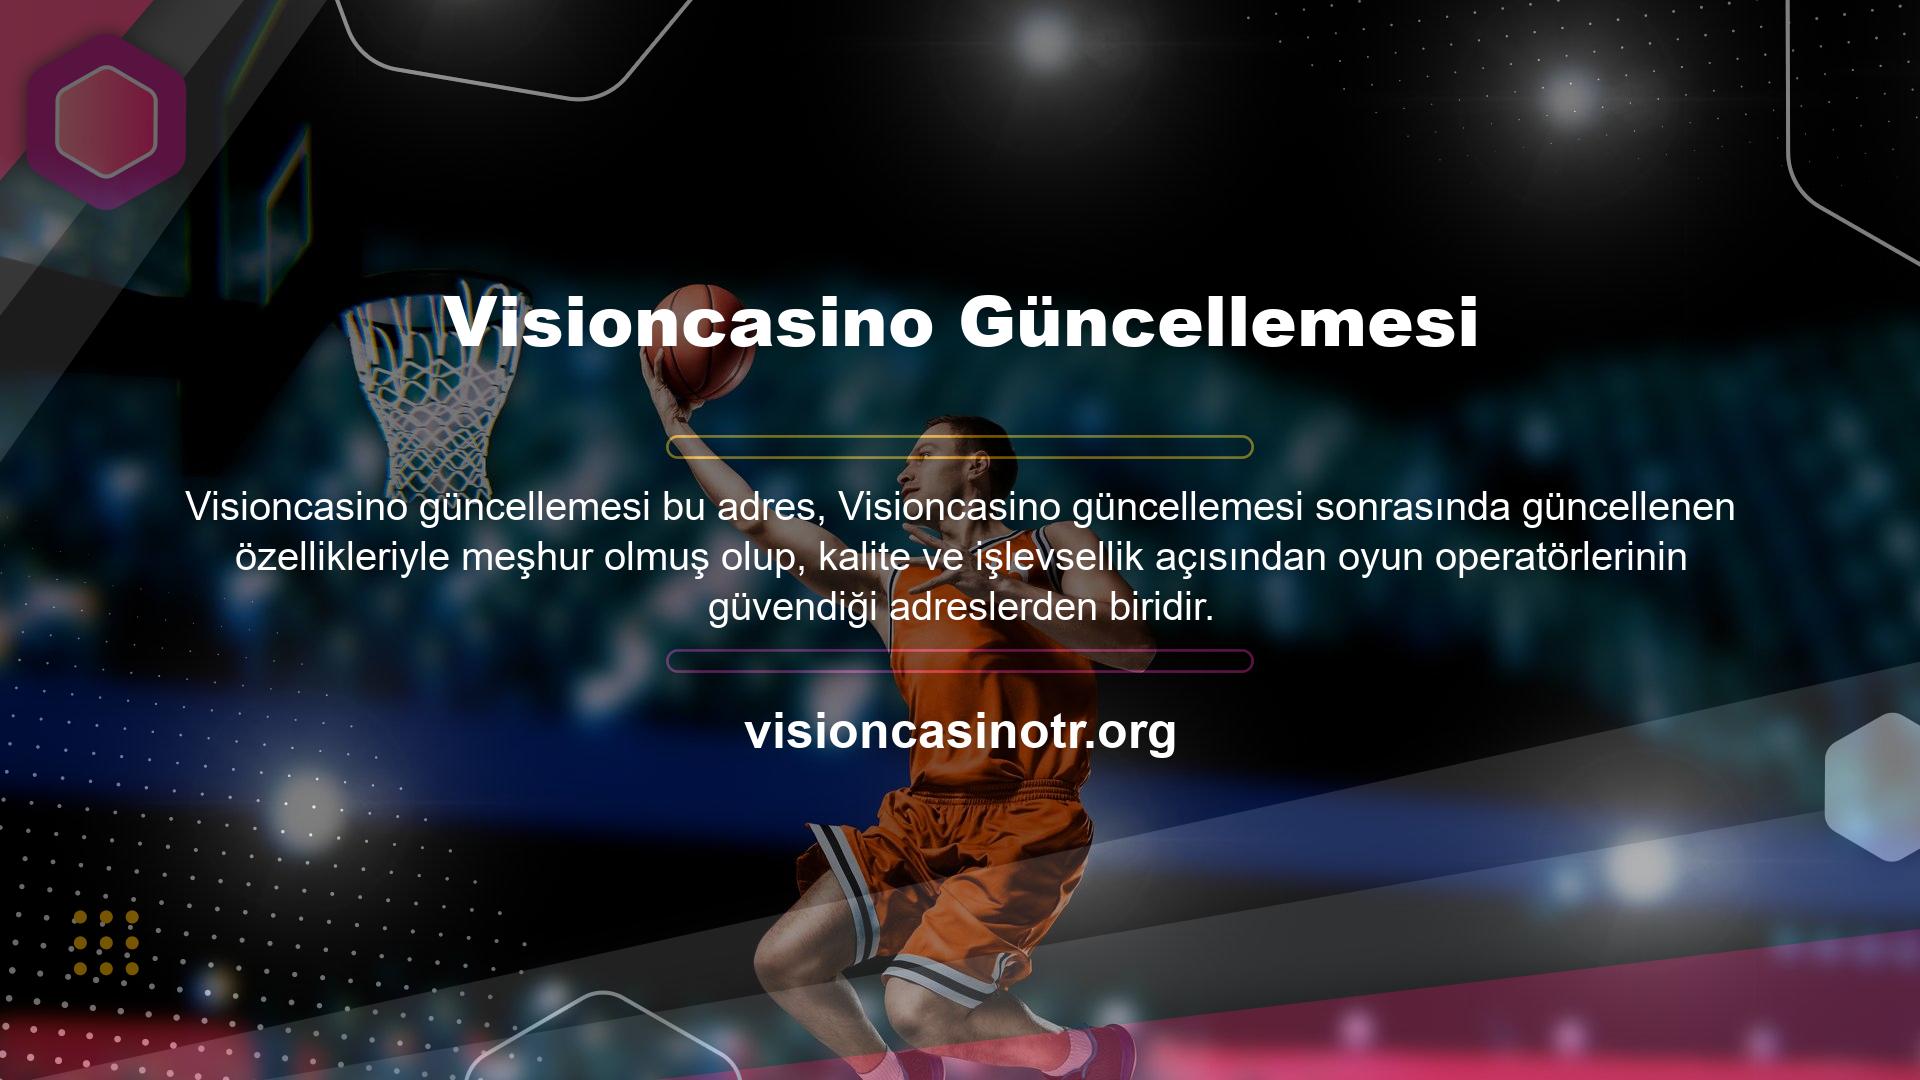 Visioncasino bahis sitesine kayıt olurken doğru kararı vermeniz gerekiyor